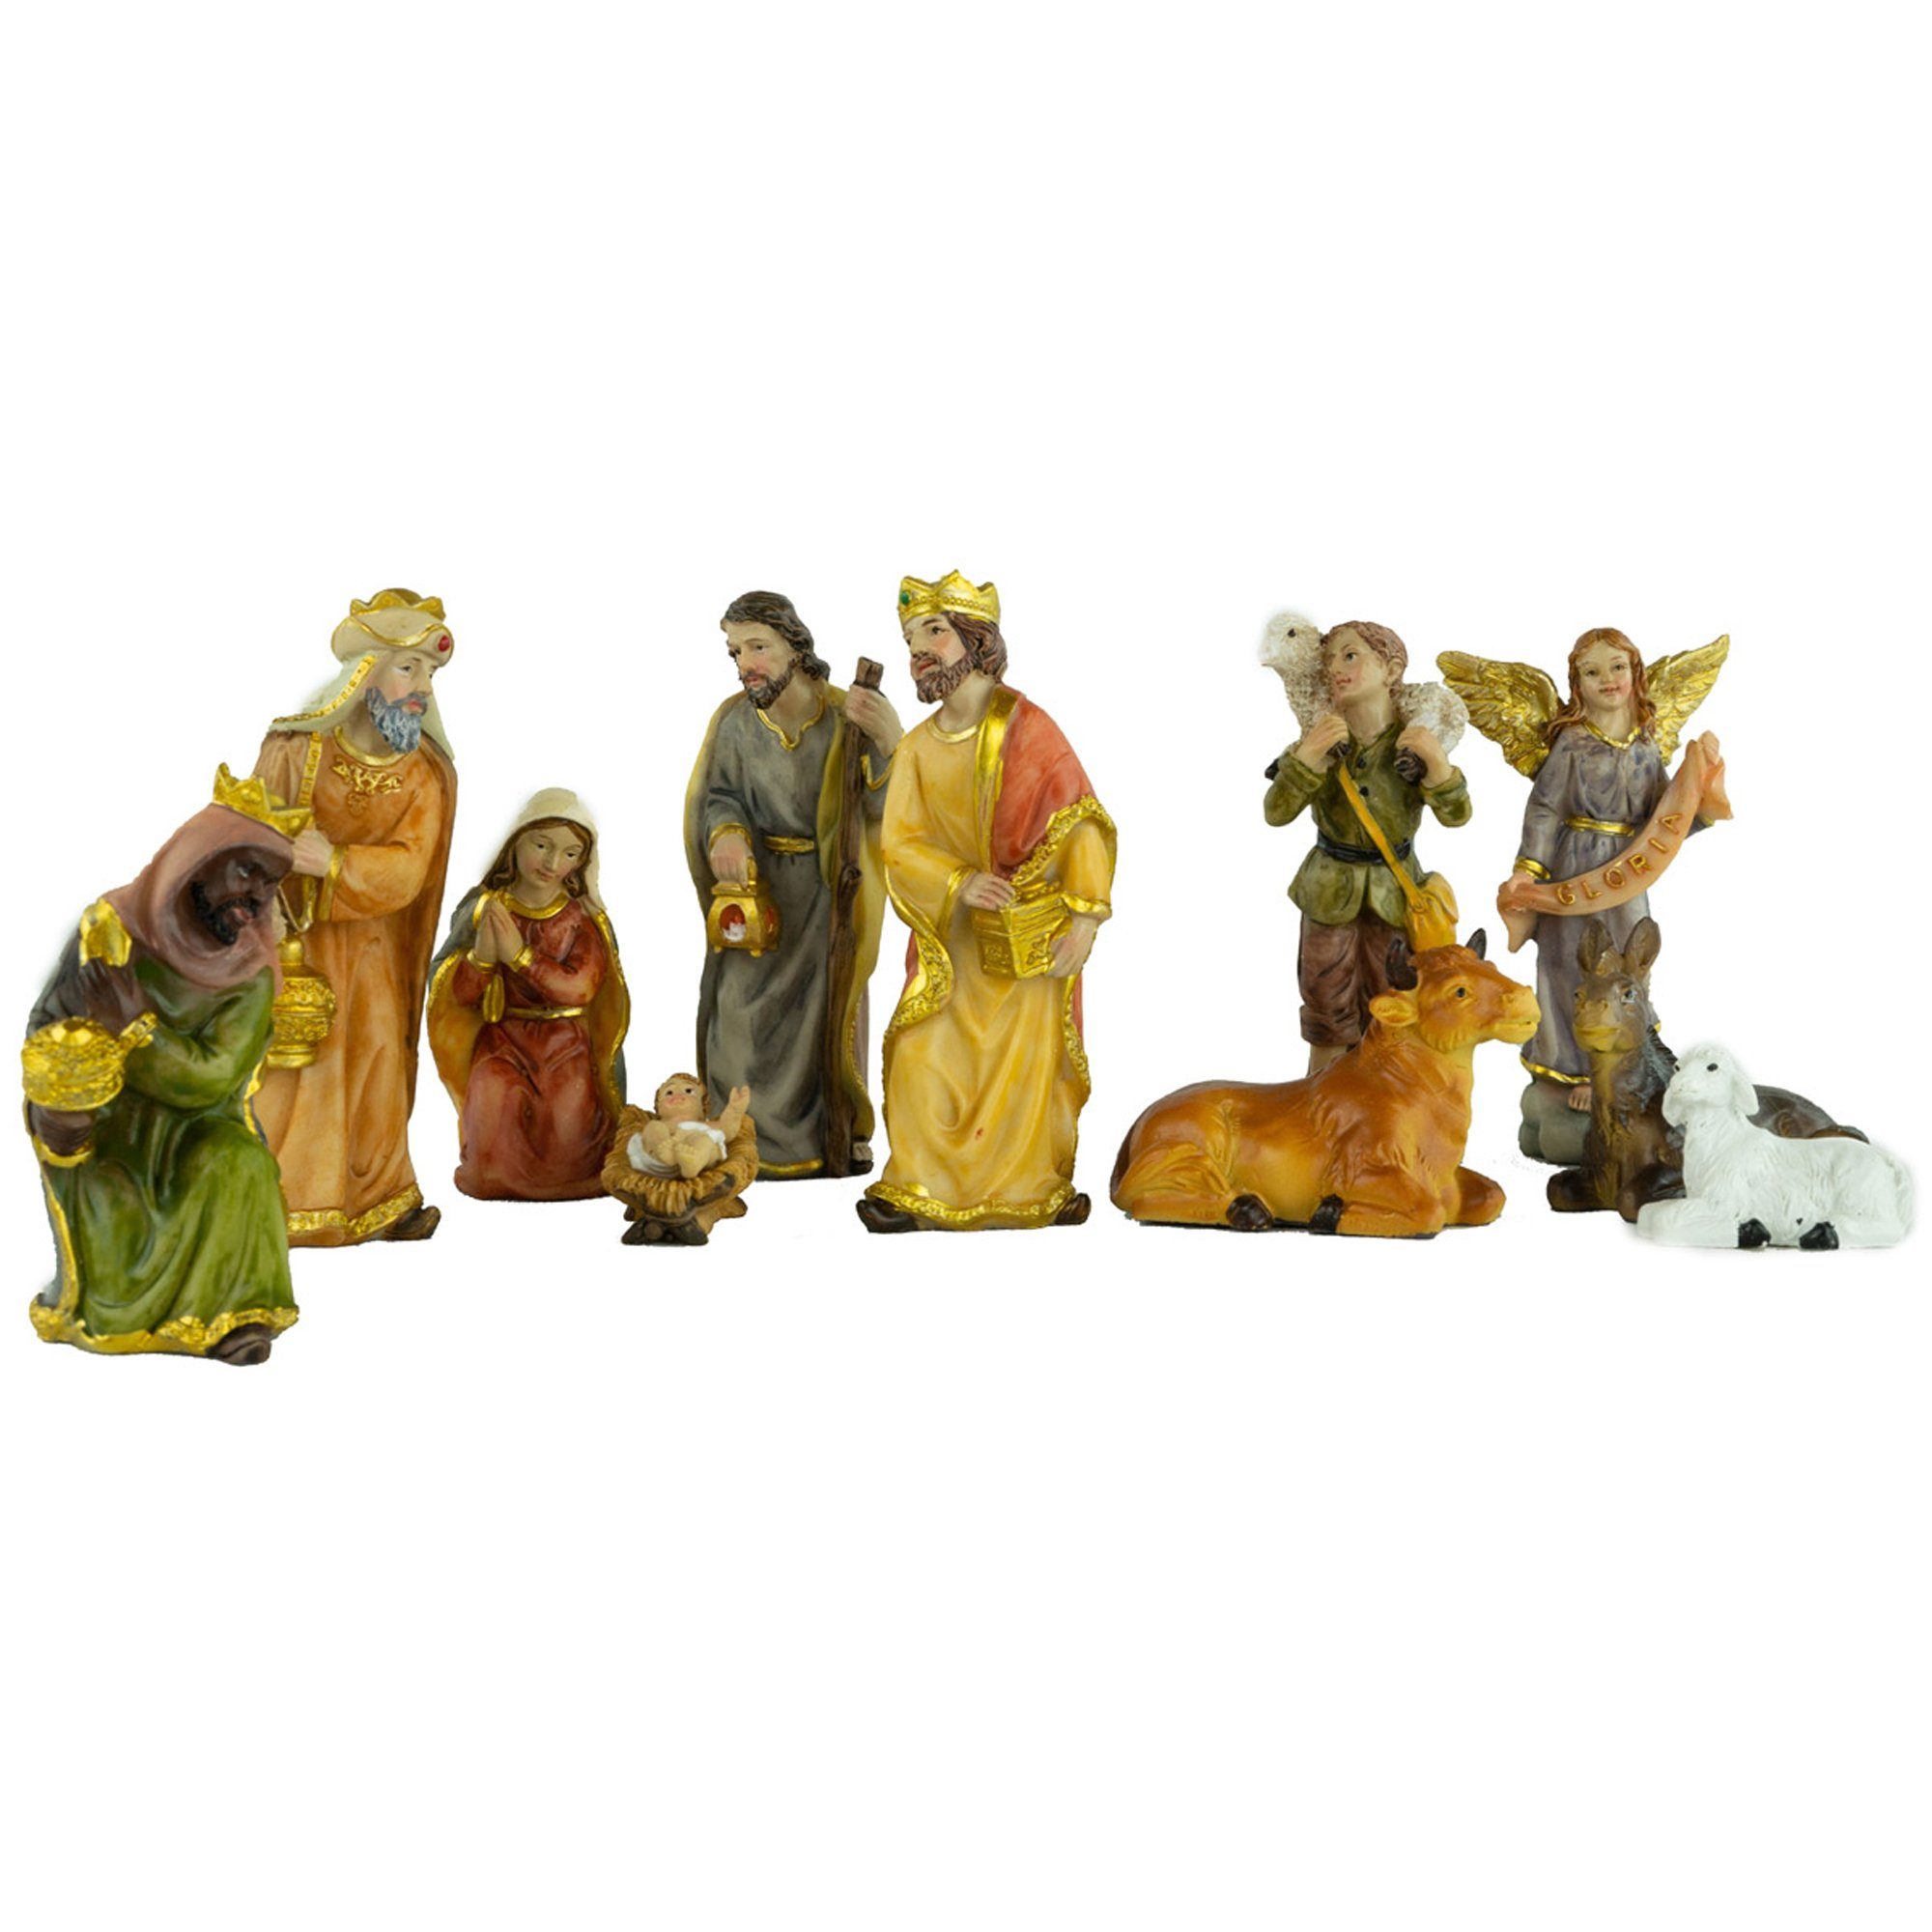 Krippenursel Krippe Weihnachtskrippe Moorsbrunn Handbemalte Figuren,detailliert Figurensatz 12-tlg. inkl. 650-7 (12-tlg), Krippenhaus F gestaltetes